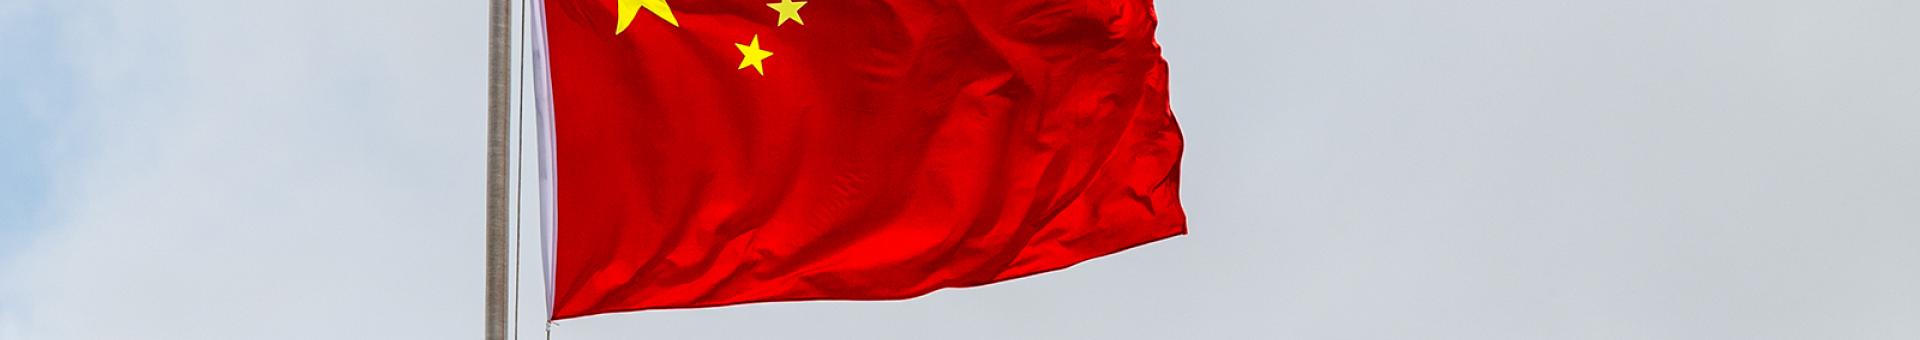 Chine : Montant record de liquidités injectées, la politique monétaire restera flexible